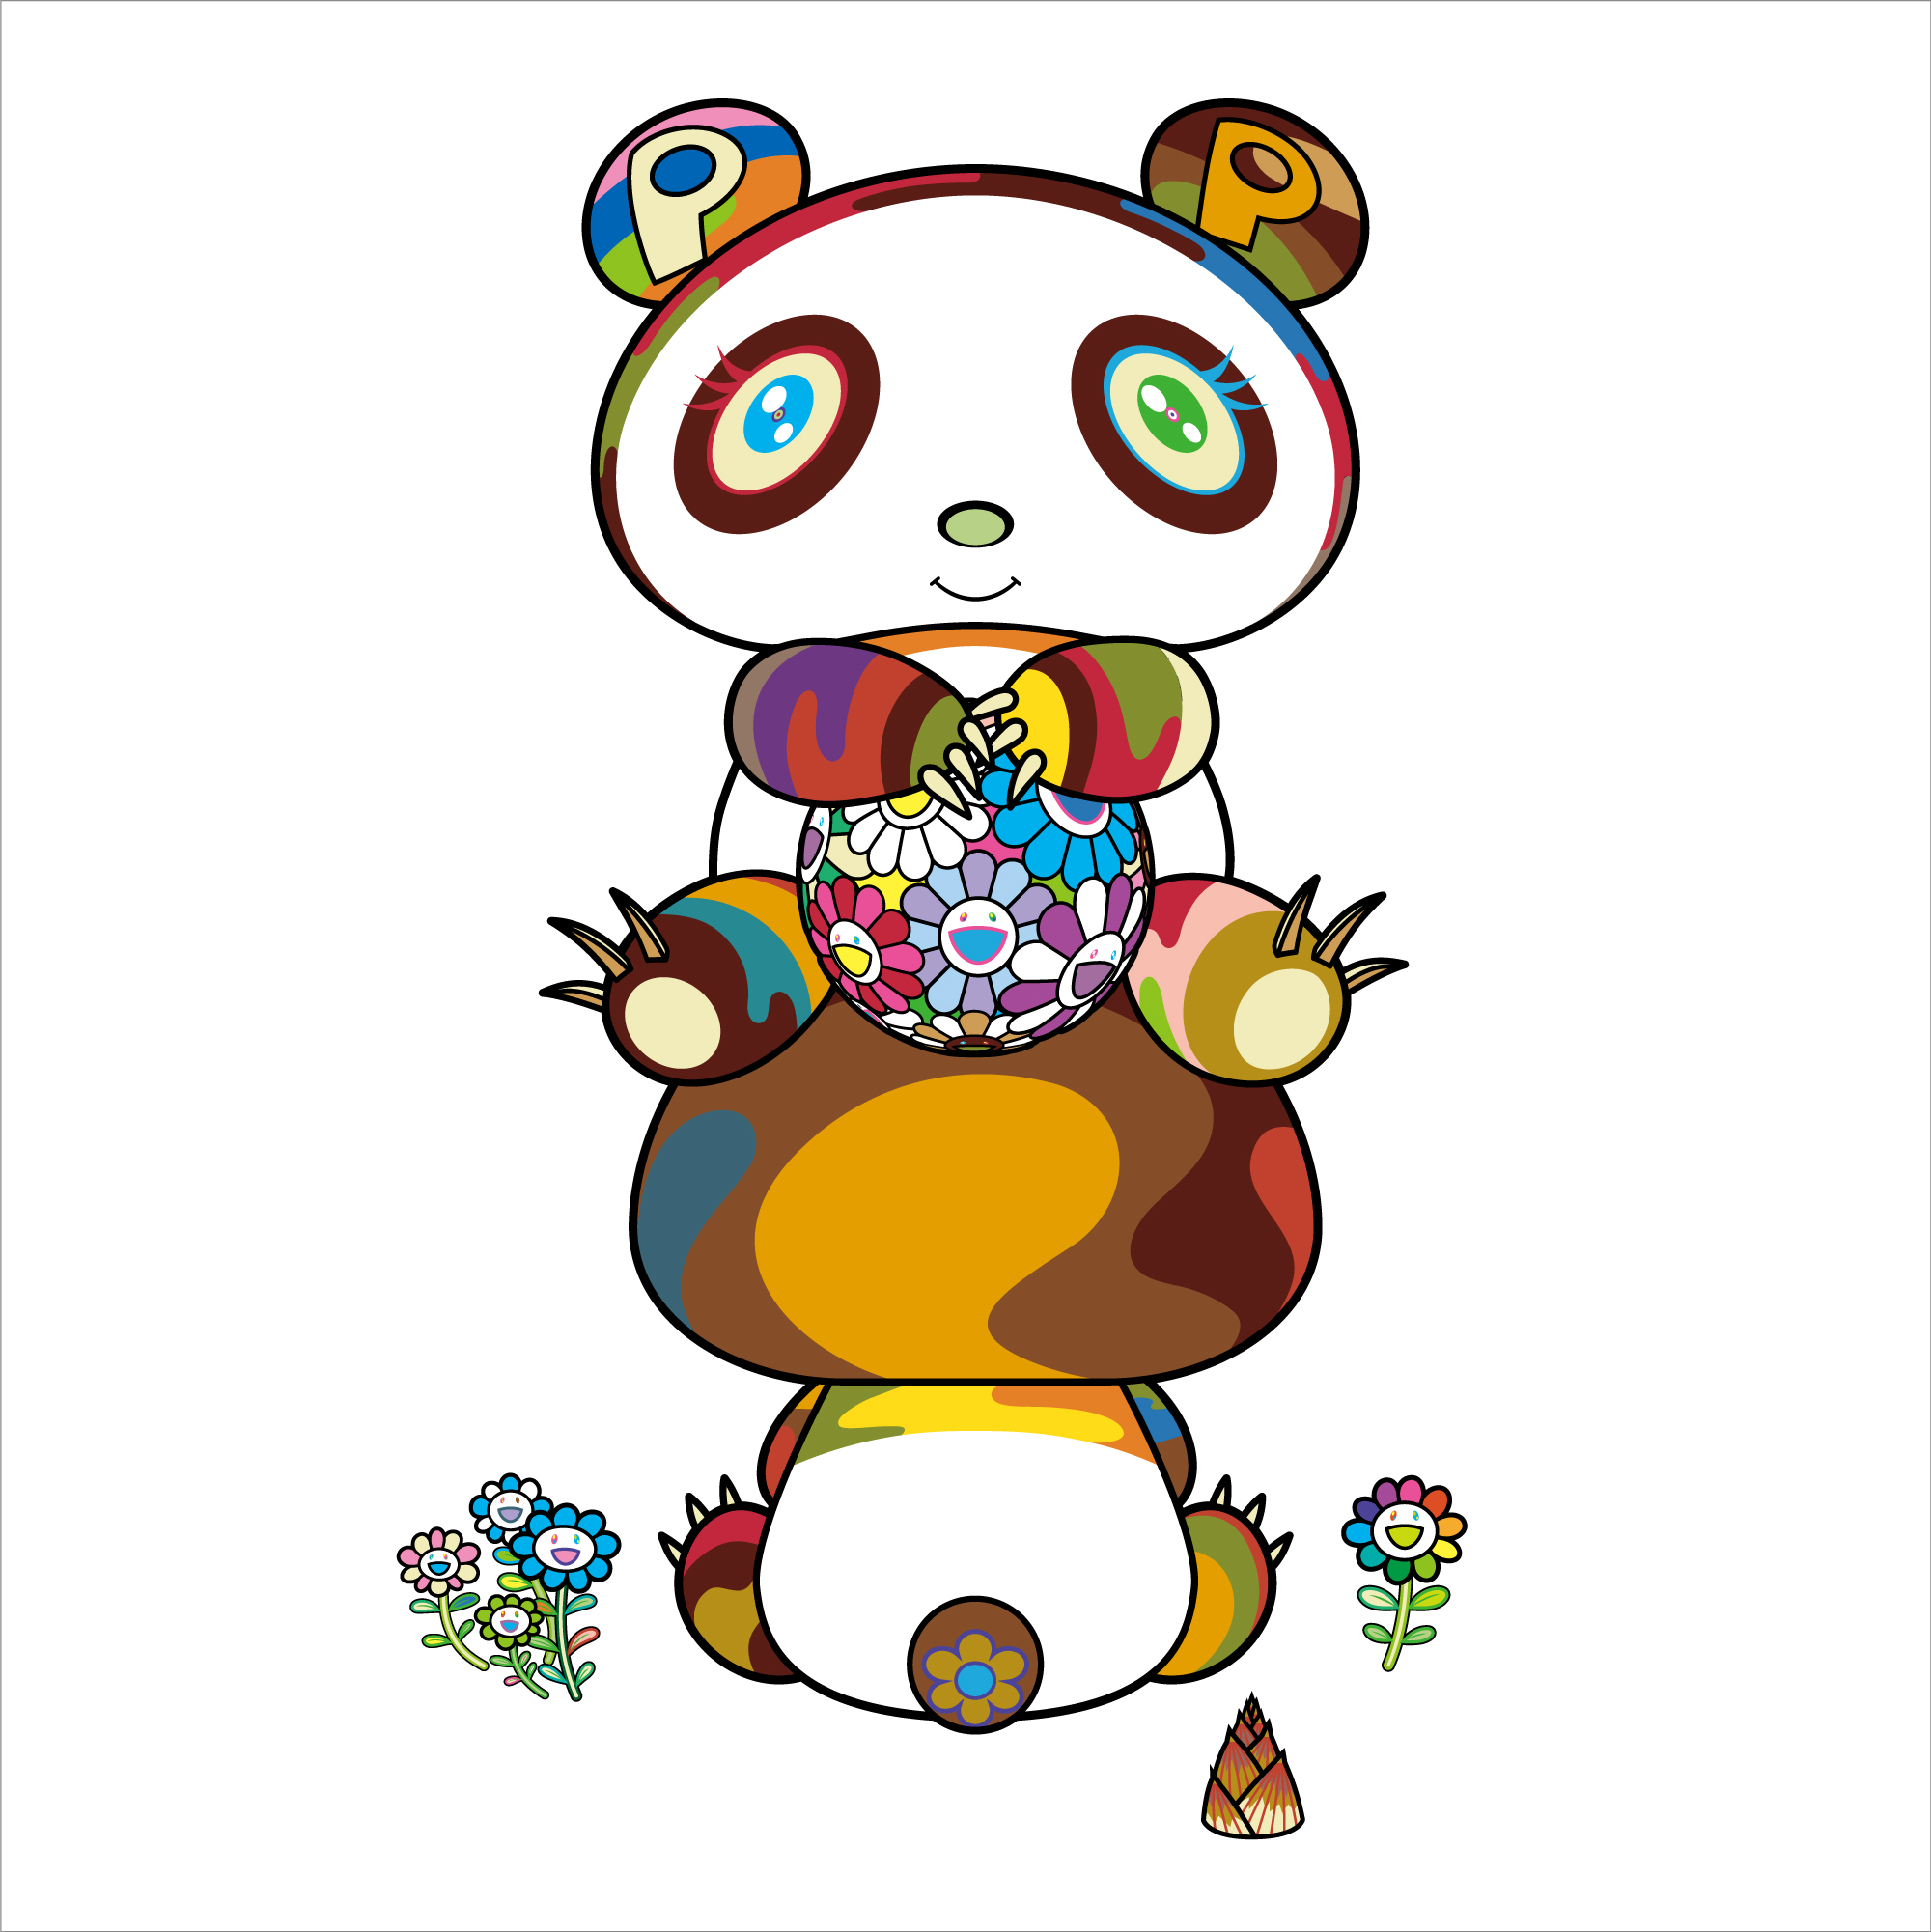 8月25日(火)10時より、WEBショップにて村上隆の新作パンダ版画「お座りパンダ あっちこっち」を販売いたします。 | Zingaro